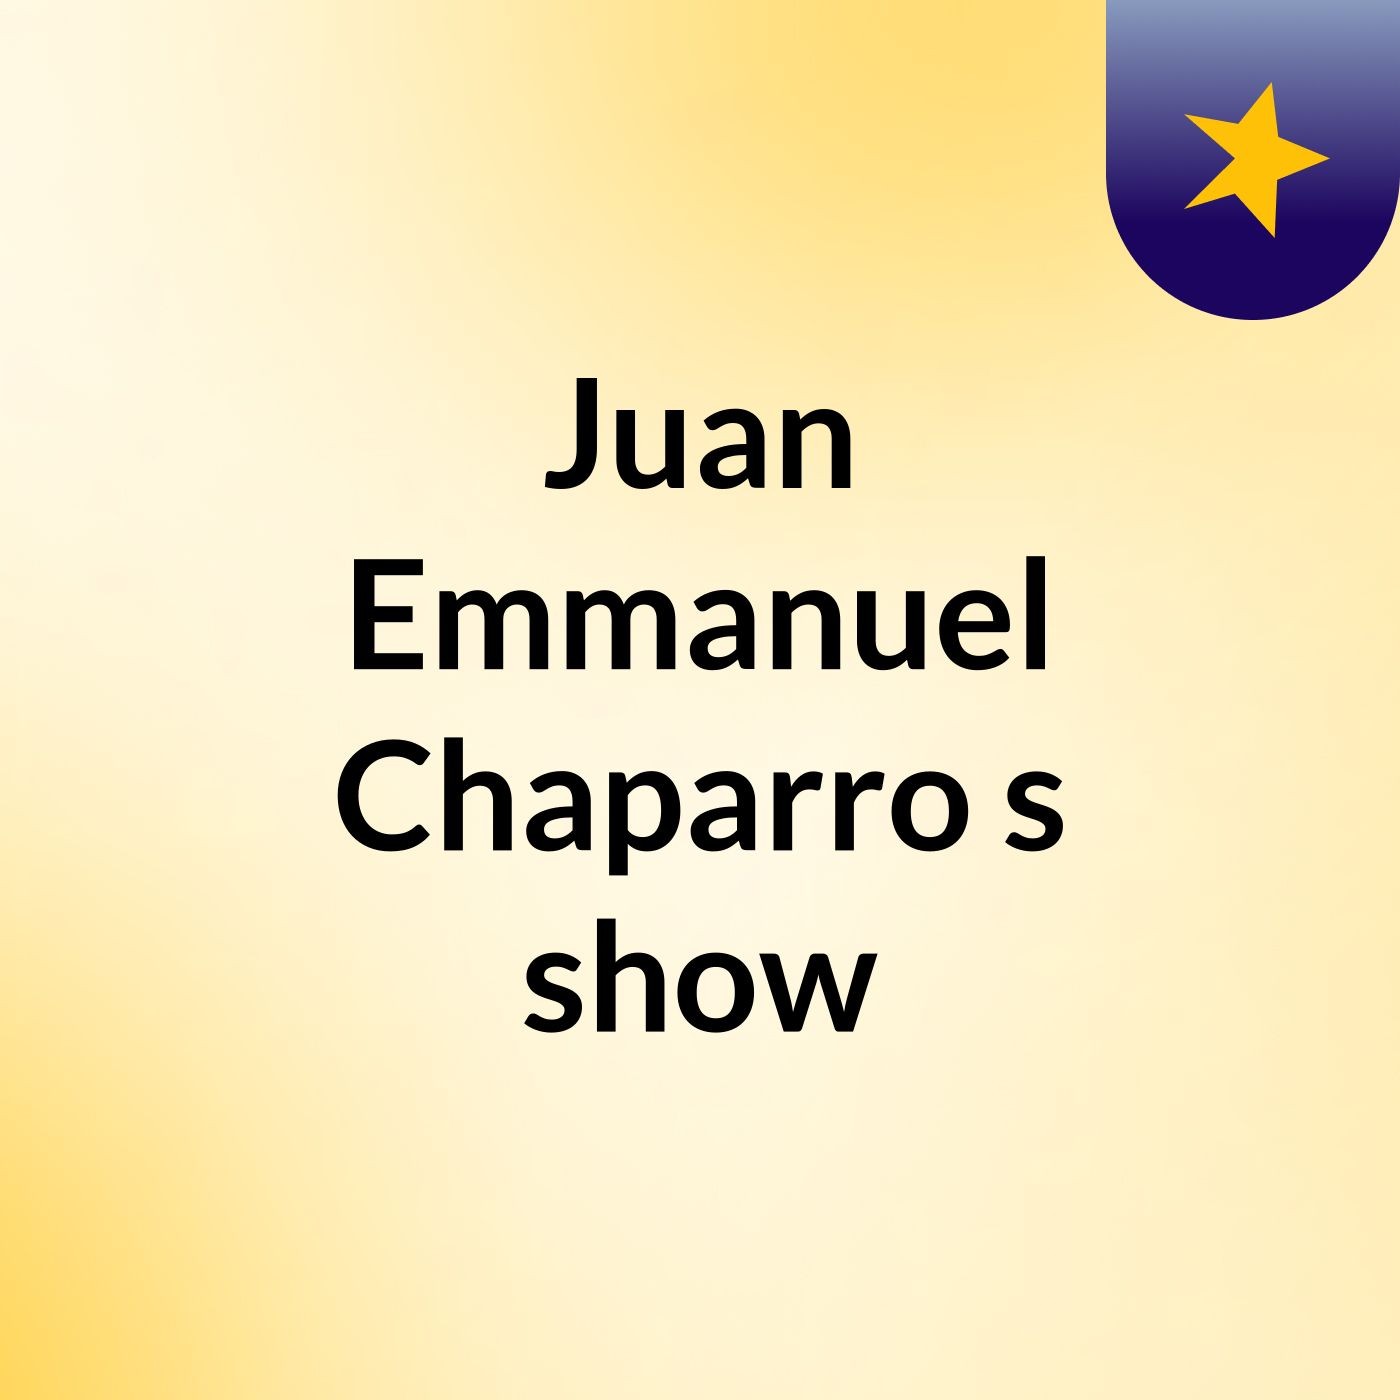 Juan Emmanuel Chaparro's show